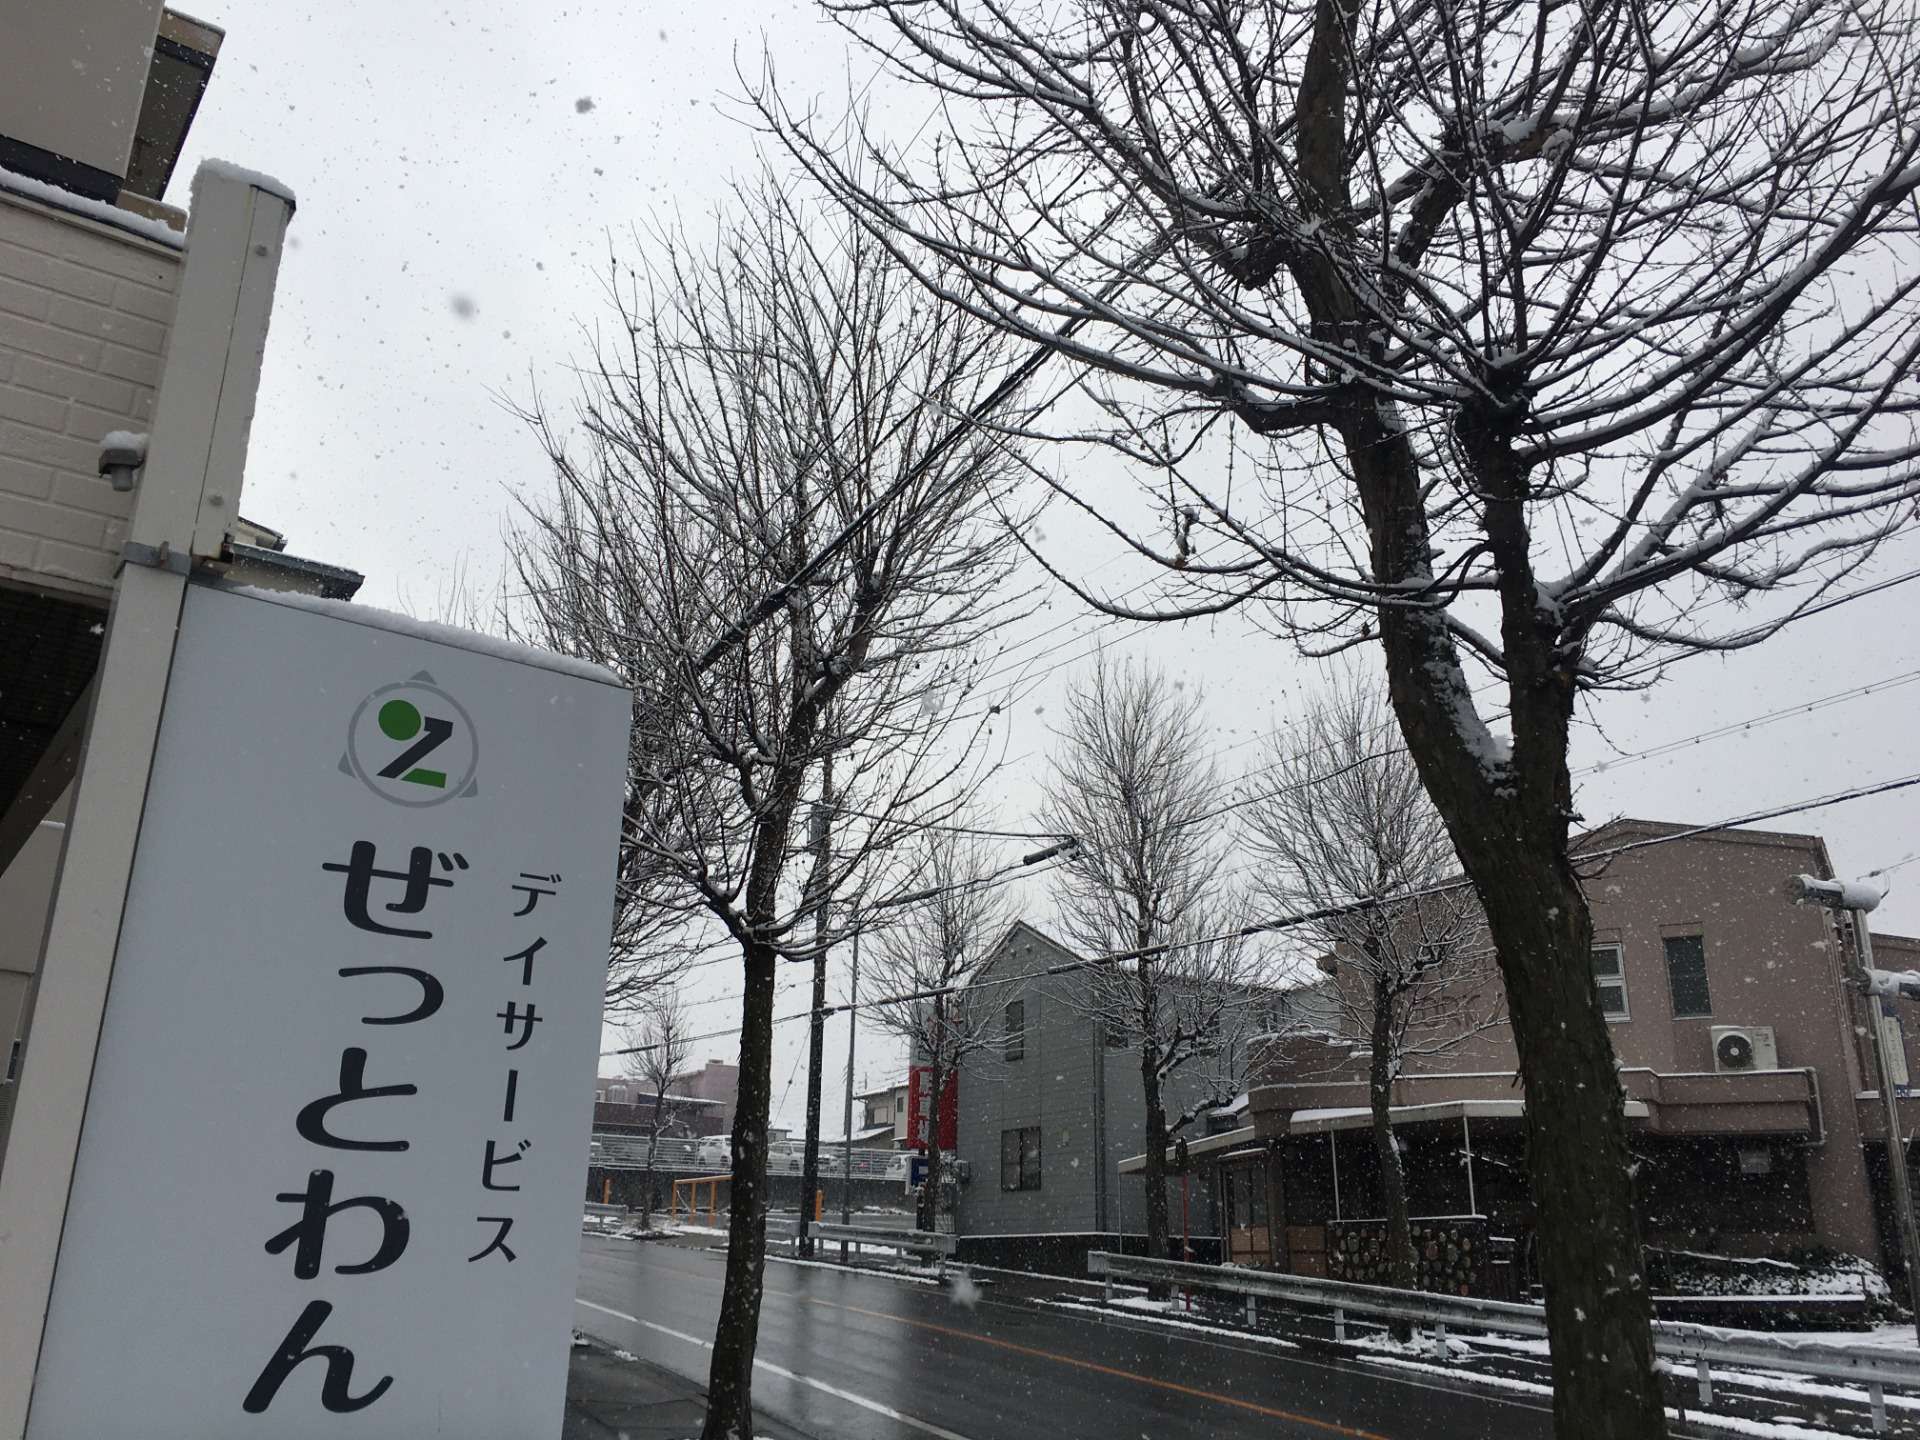 名古屋は雪化粧です